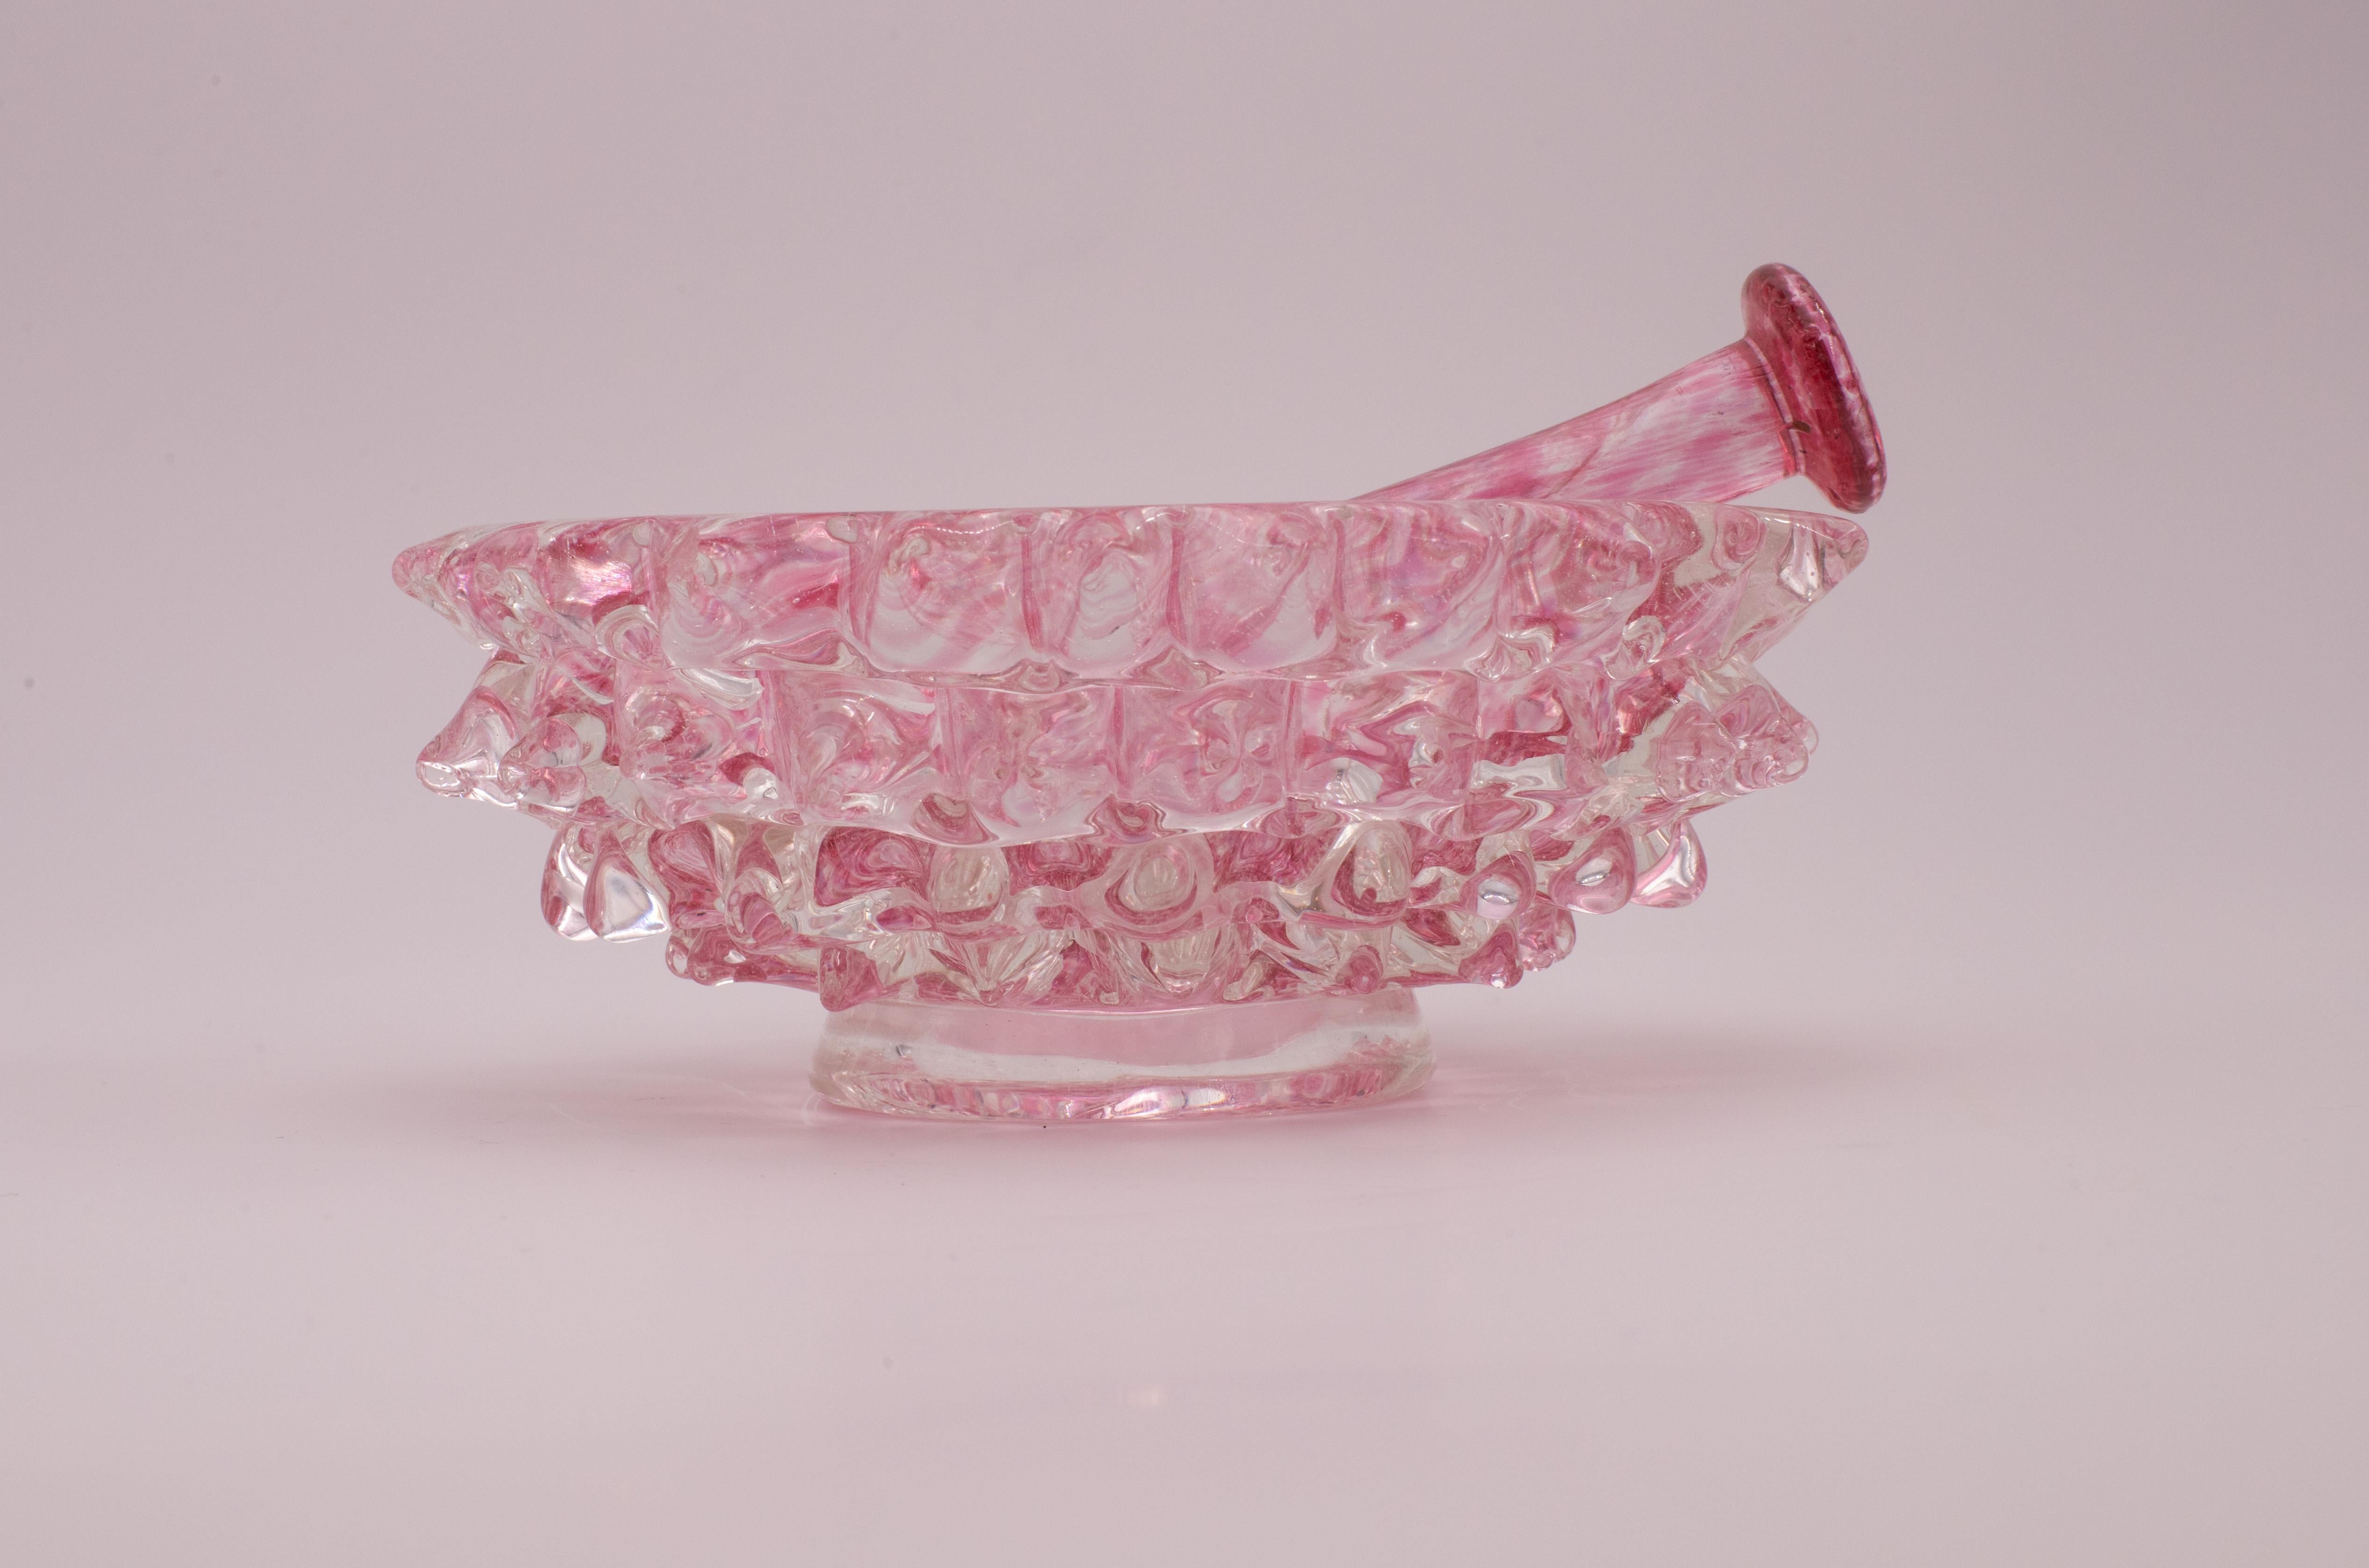 Incroyable vase en verre de Murano soufflé à la bouche dans un rare rostrato rose du milieu du siècle dernier. Ce magnifique objet a été produit dans les années 1940 en Italie par Ercole Barovier pour Barovier&Toso.
La tige de mortier est également